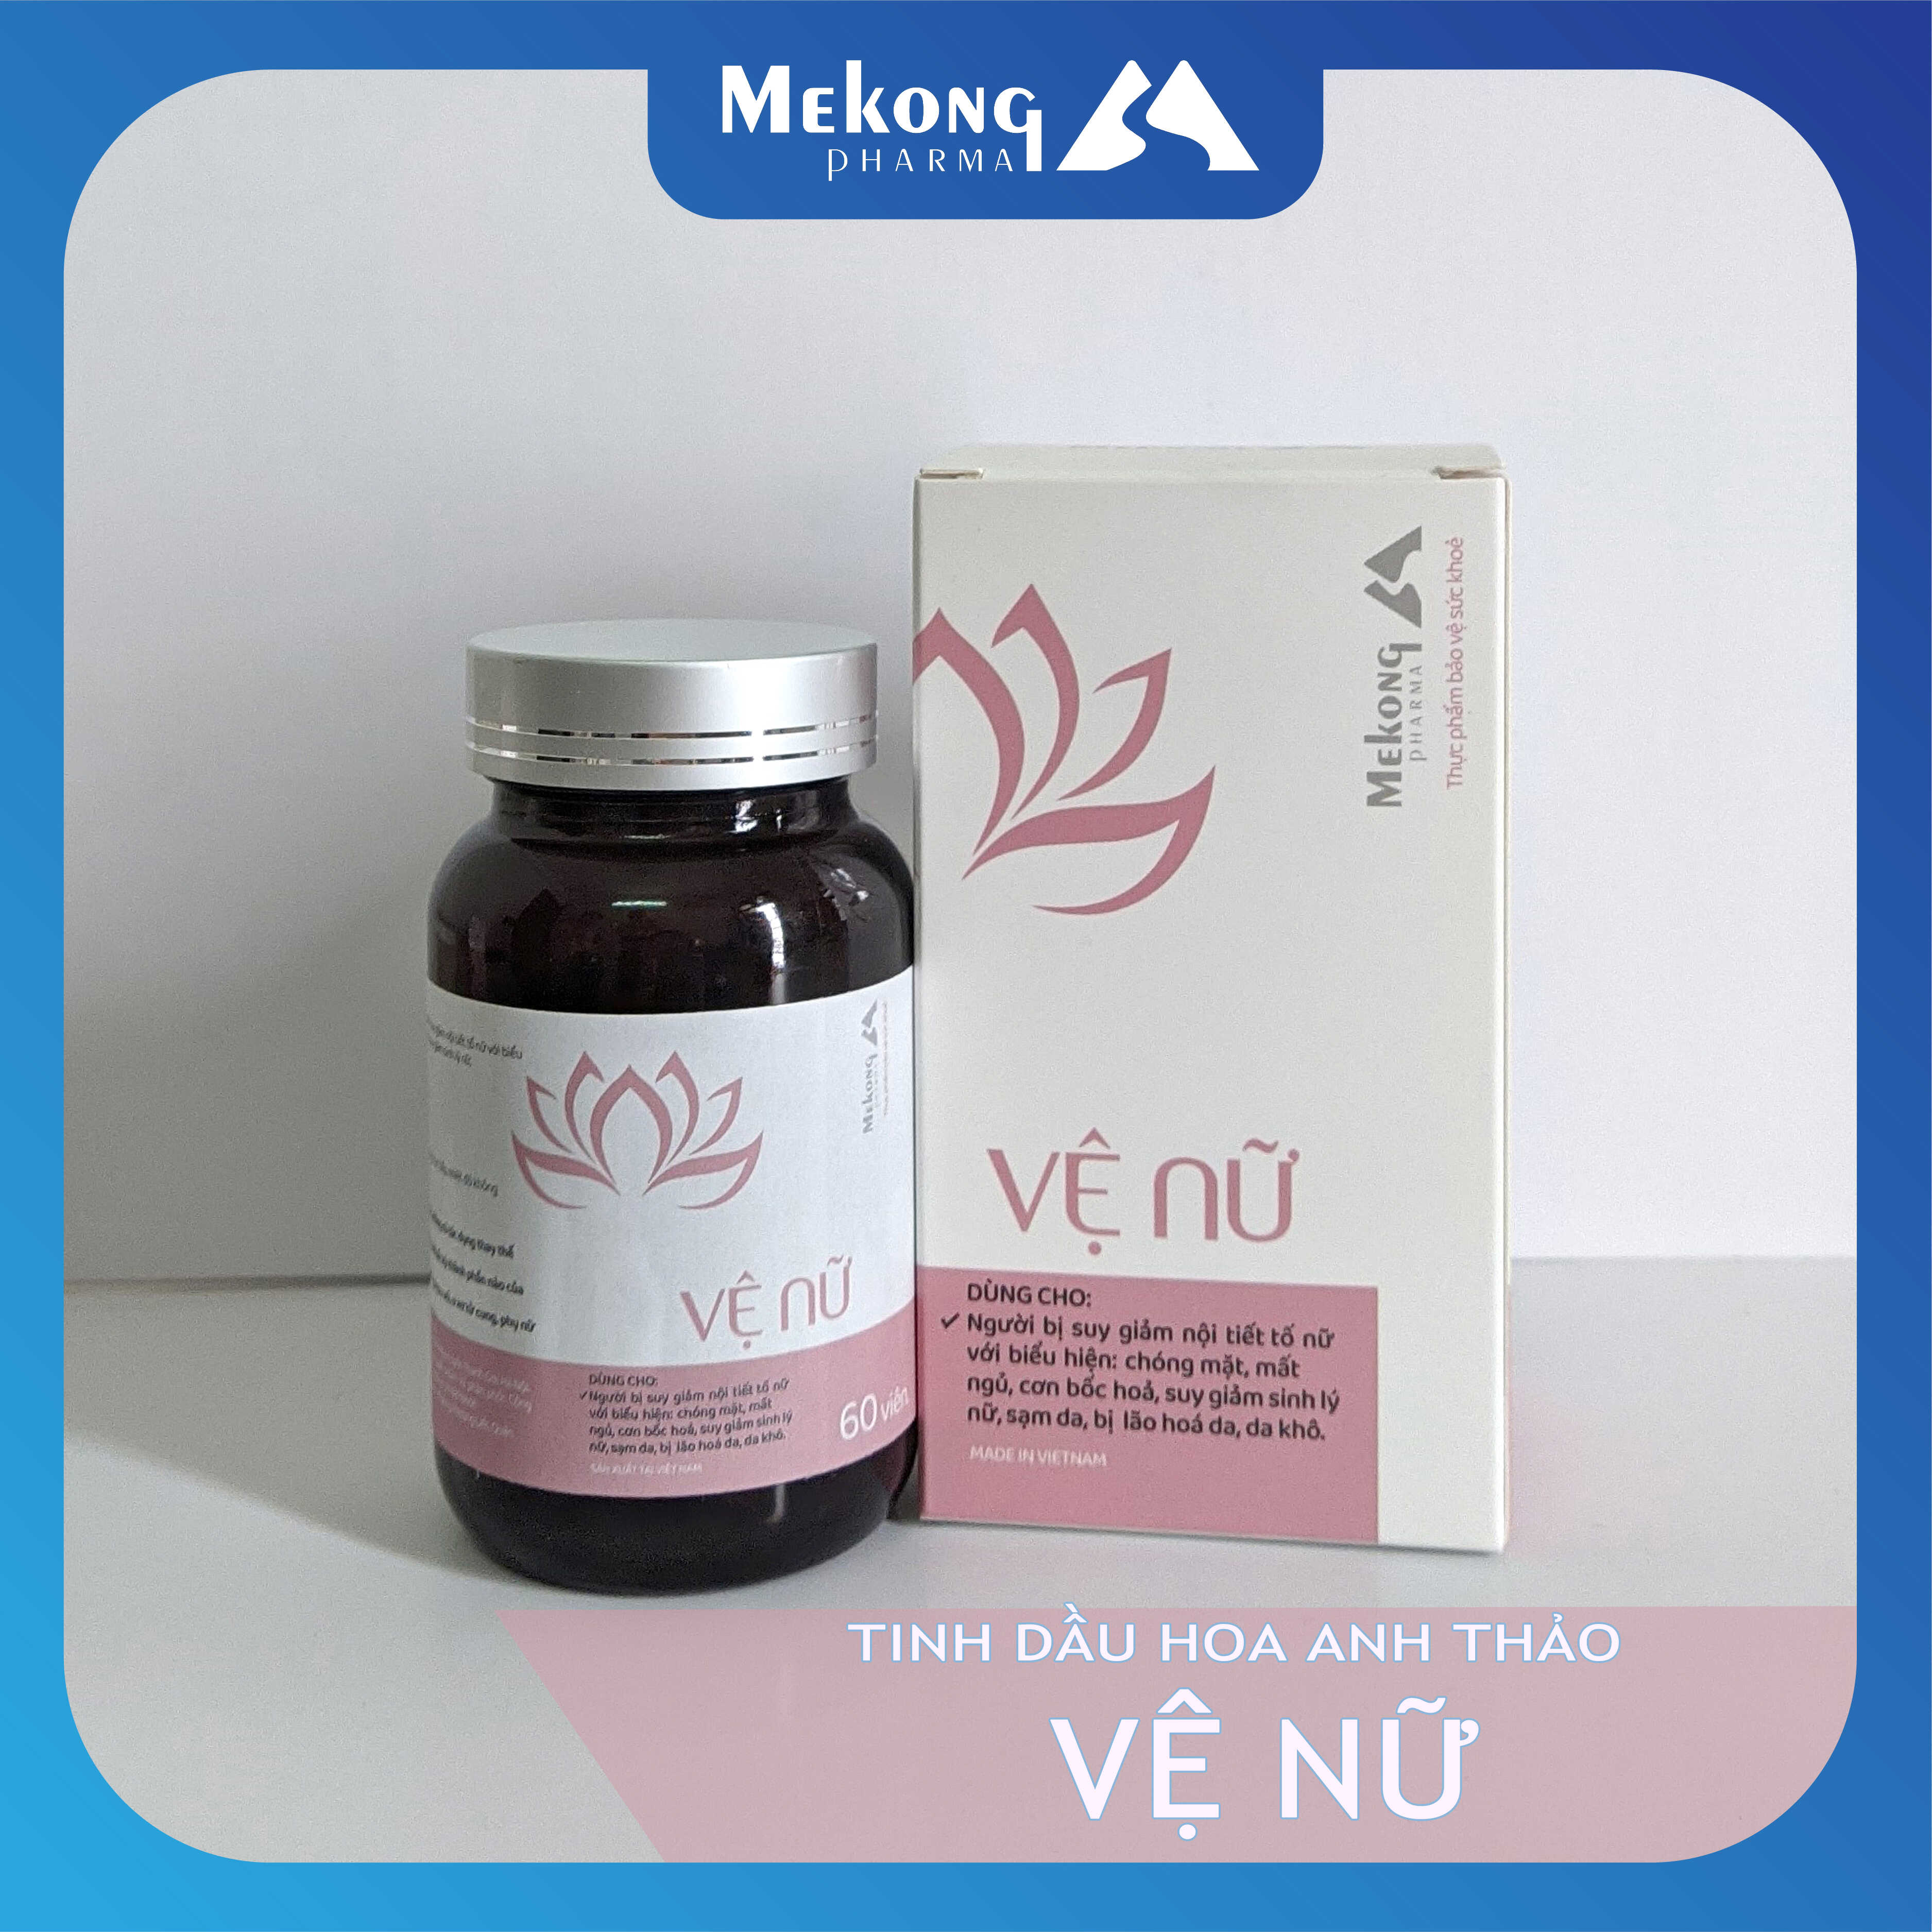 Dầu hoa anh thảo Vệ Nữ Mekong Pharma - Cải thiện nội tiết tố nữ, giảm nguy cơ lão hóa, làm đẹp da